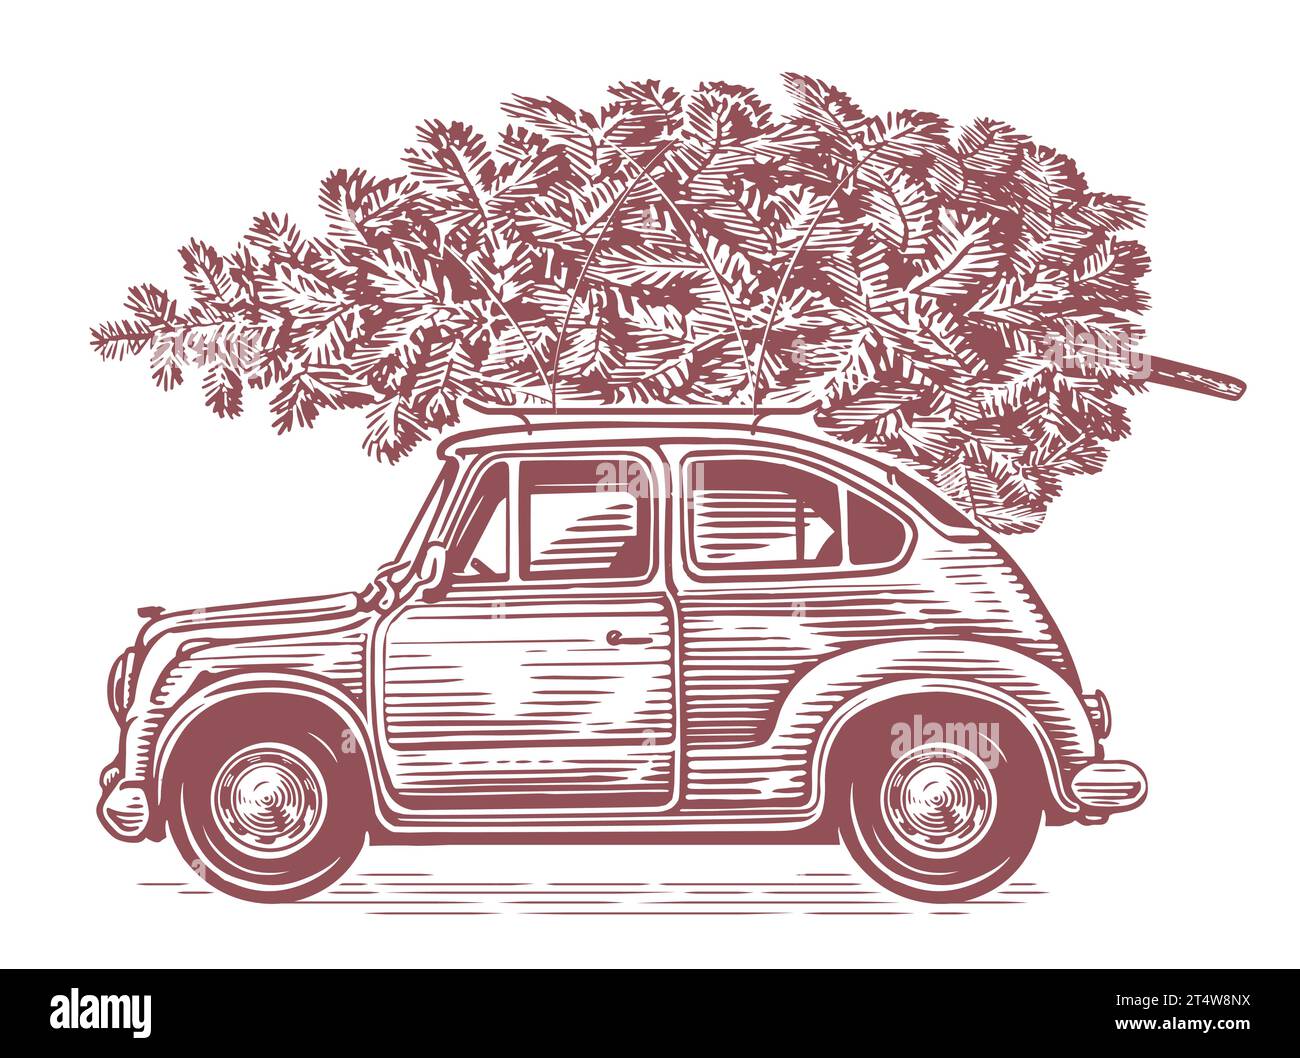 Retro-Auto mit Weihnachtsbaum oben im Sketch-Art-Stil. Handgezeichnete Vintage-Vektor-Illustration Stock Vektor